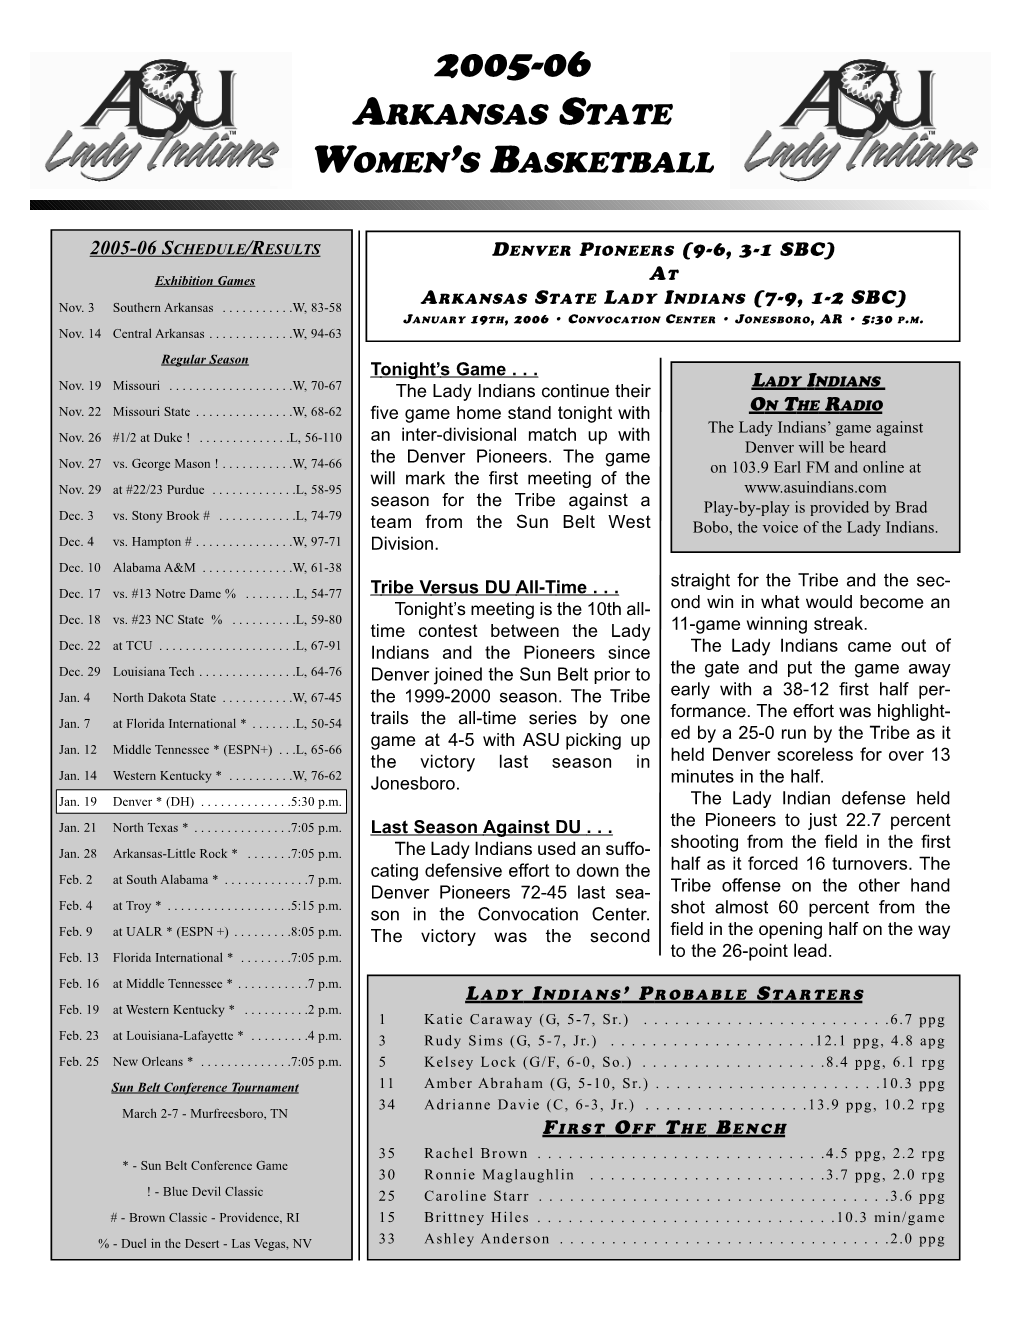 2005-06 Arkansas State Women's Basketball